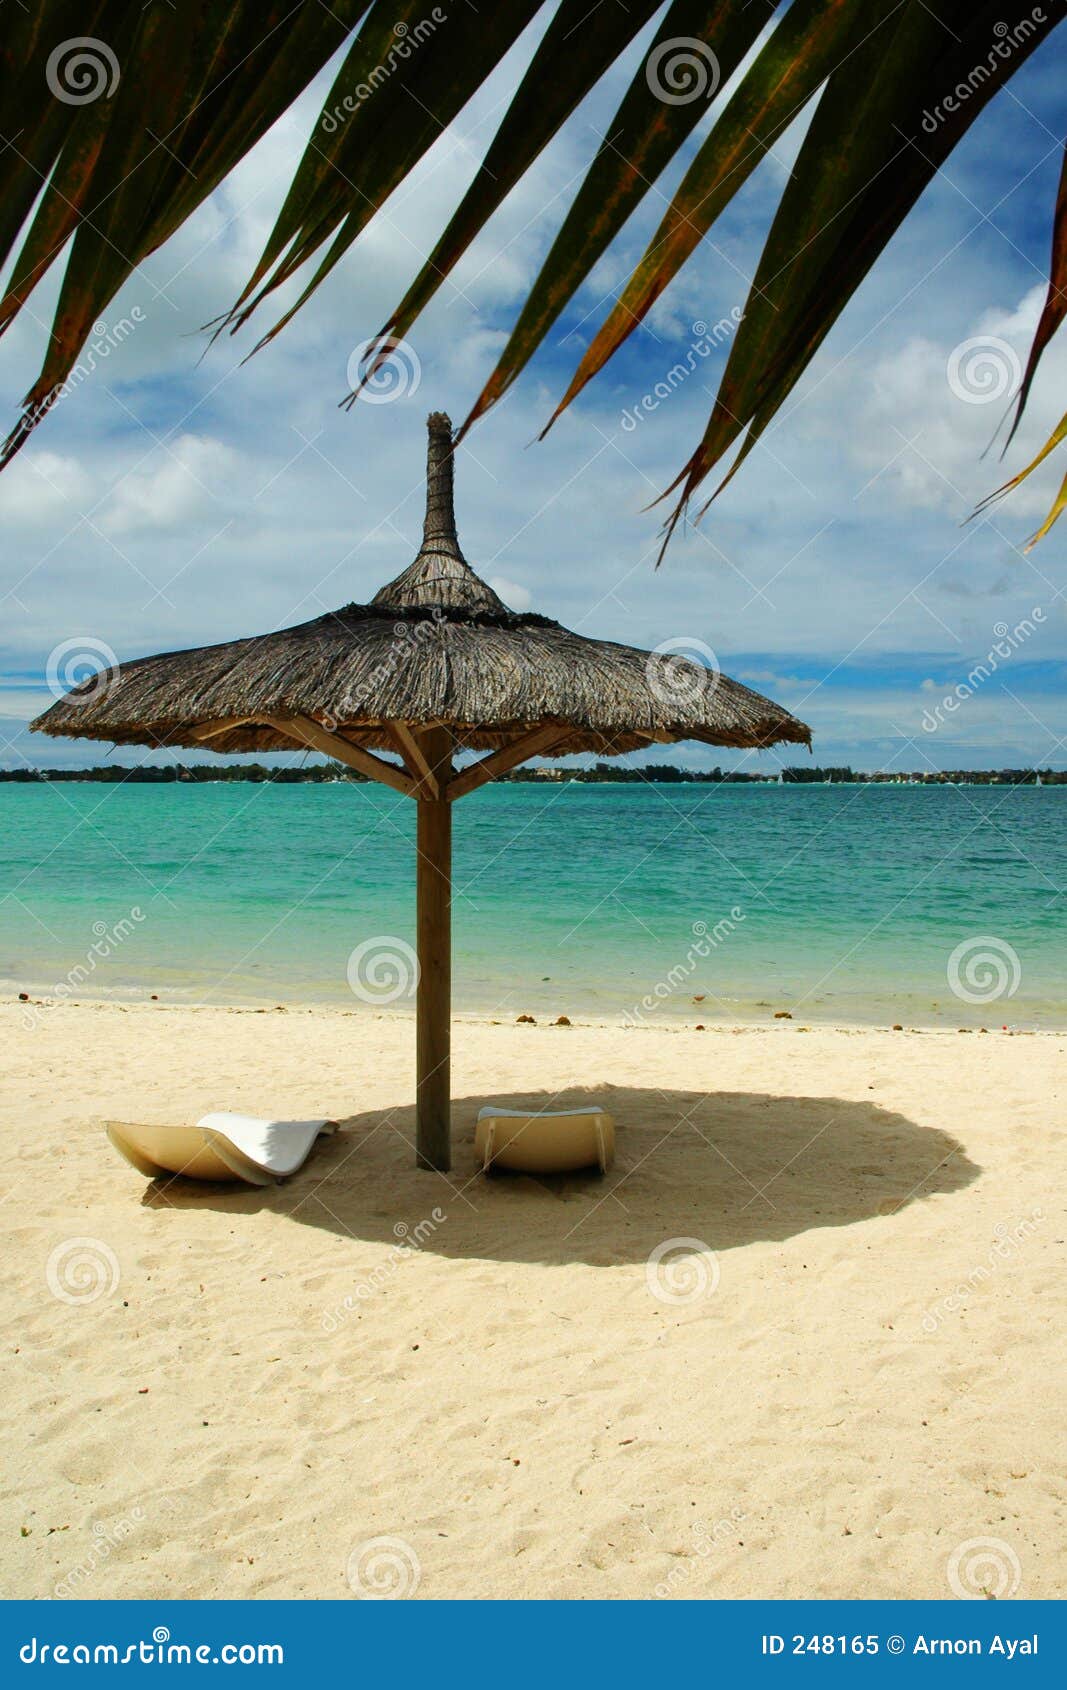 beach sunshade